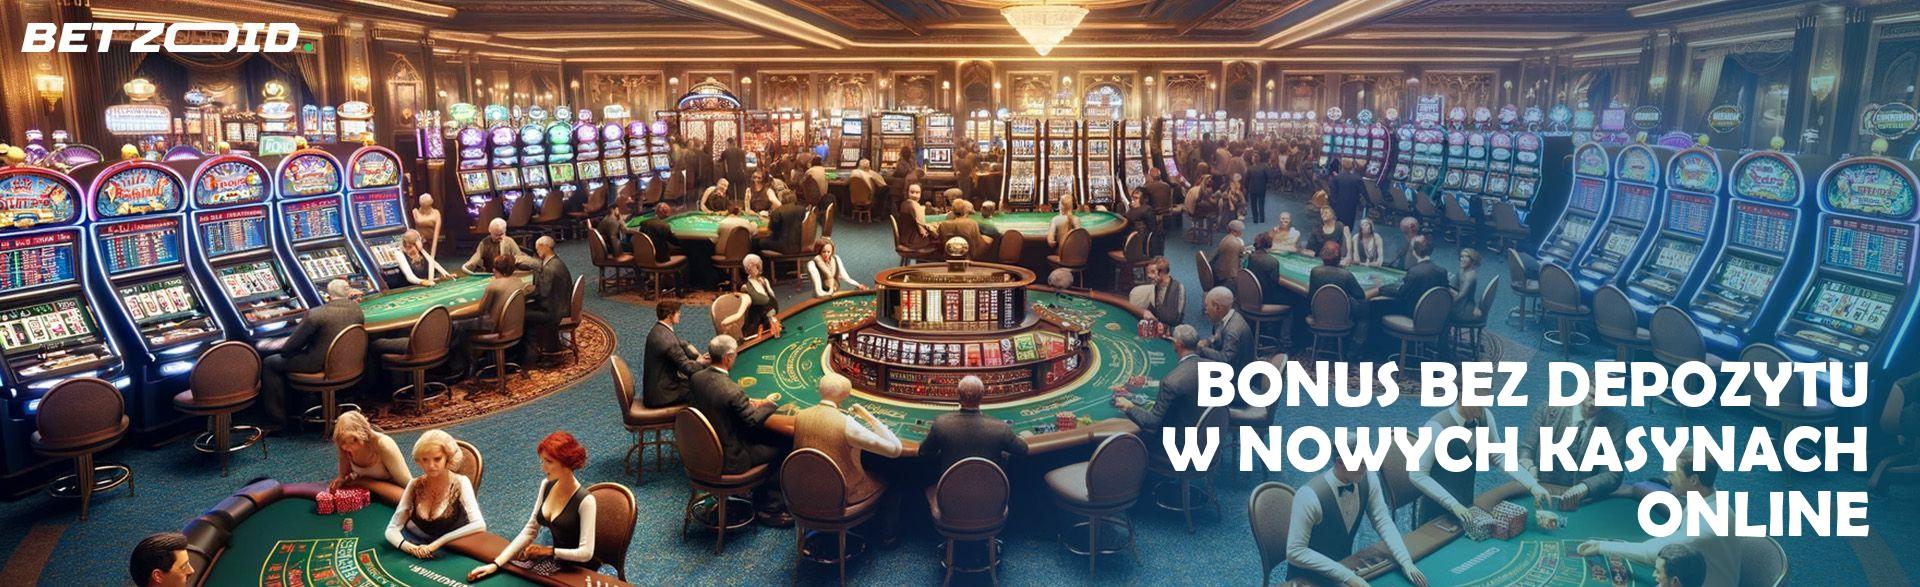 888starz - Recenzja kasyna na linii